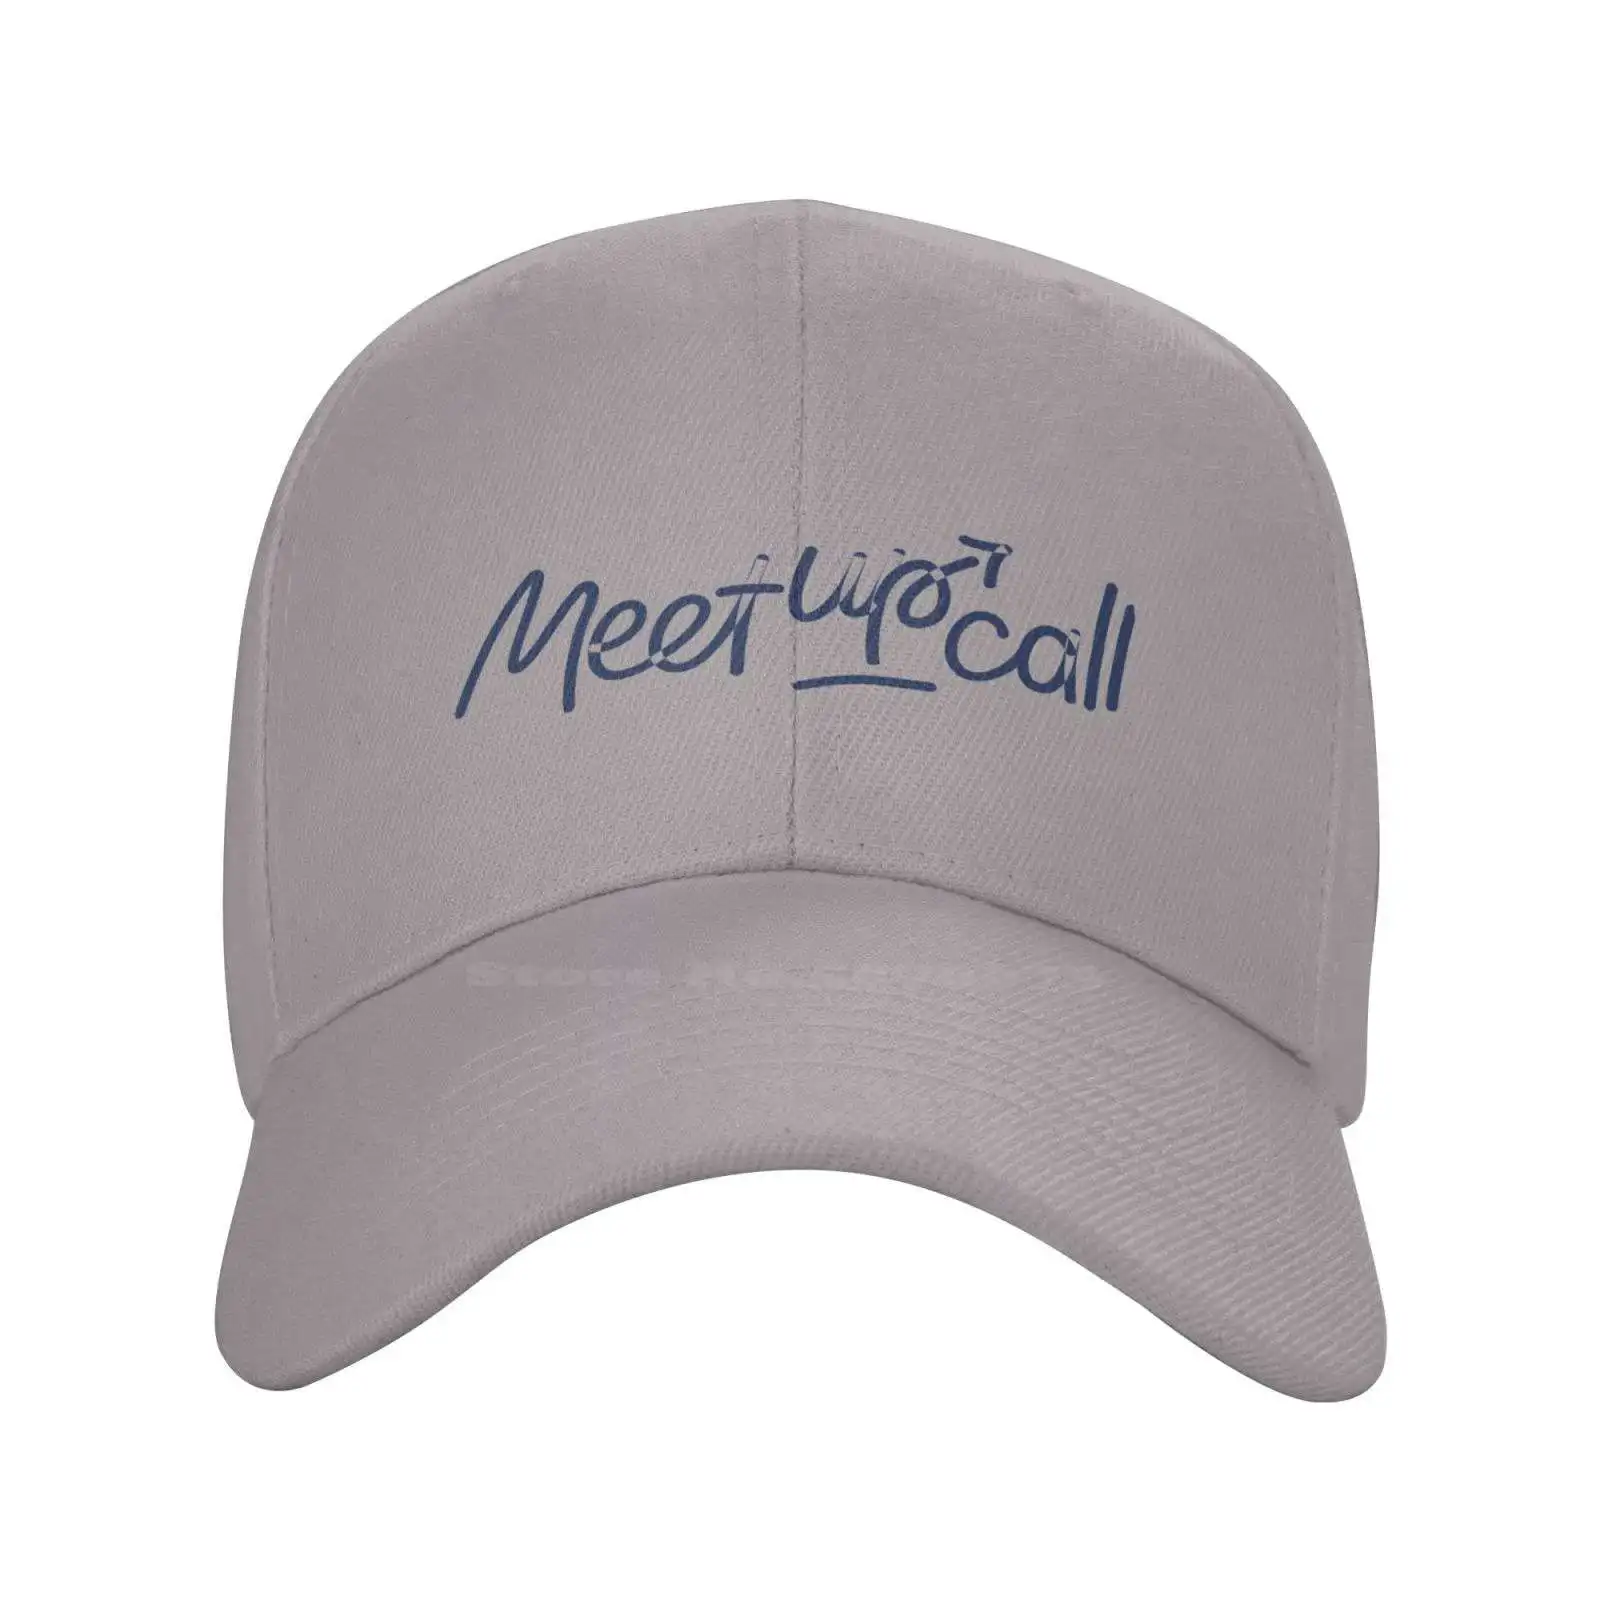 Повседневная джинсовая кепка с графическим принтом логотипа Meetupcall, Вязаная шапка, Бейсболка Изображение 1